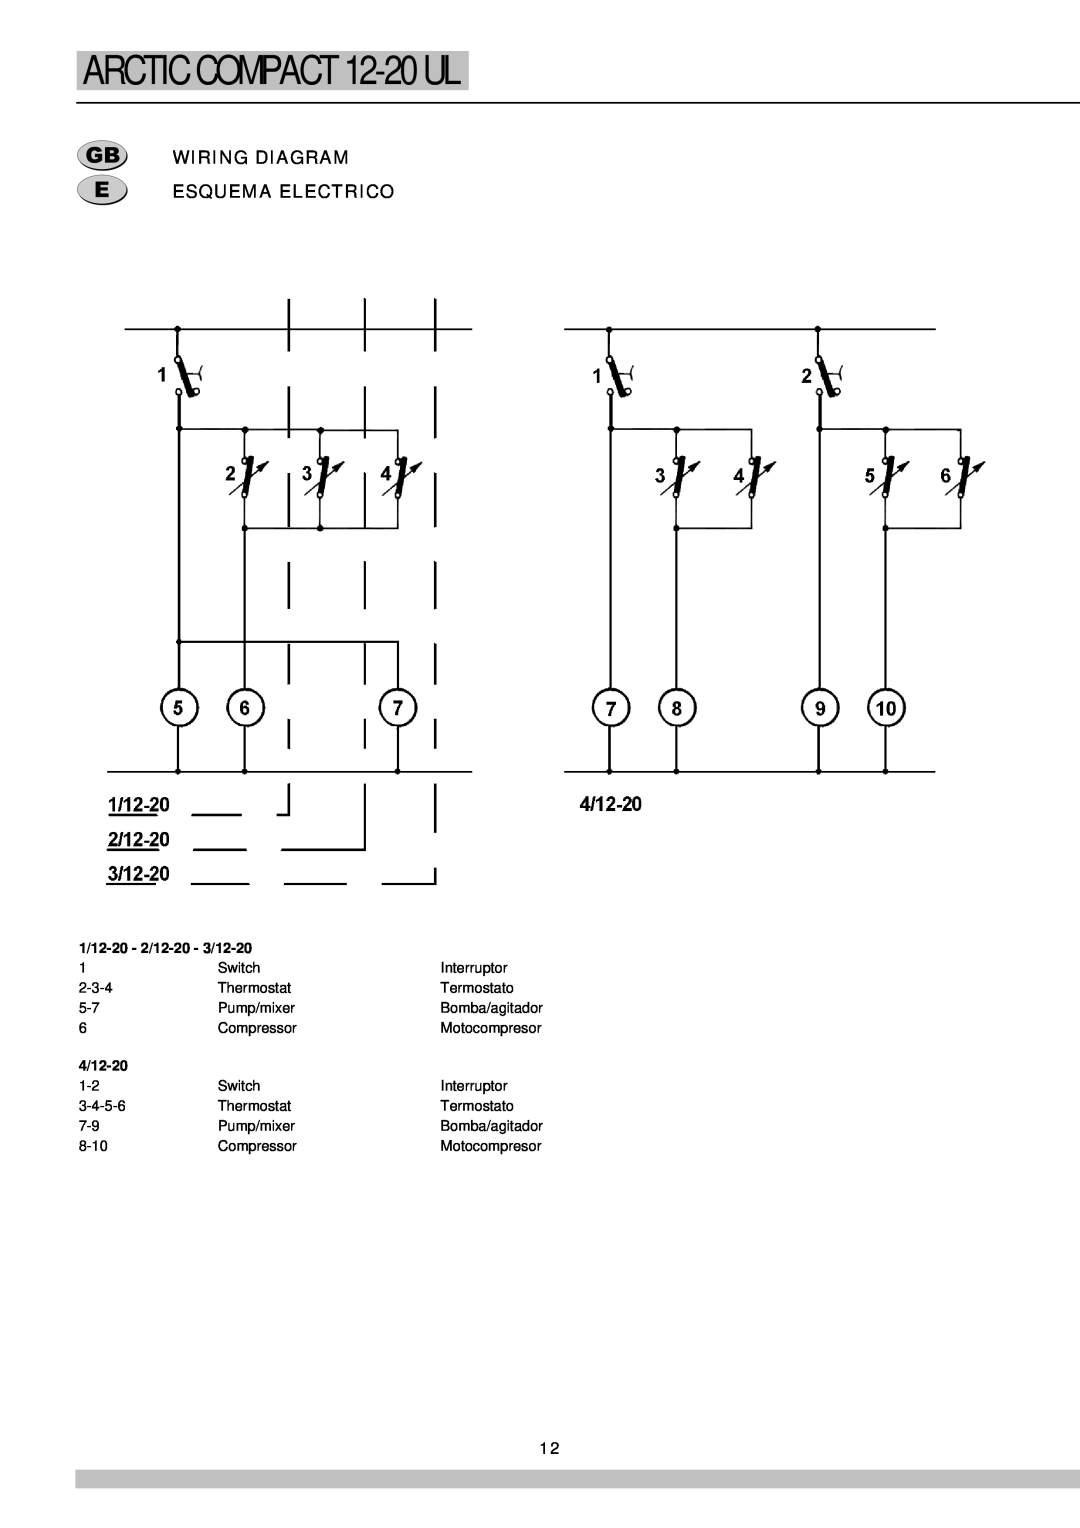 Cecilware 12-20 UL manual Wiring Diagram Esquema Electrico, ARCTIC COMPACT 12-20UL, 1/12-20- 2/12-20- 3/12-20, 4/12-20 